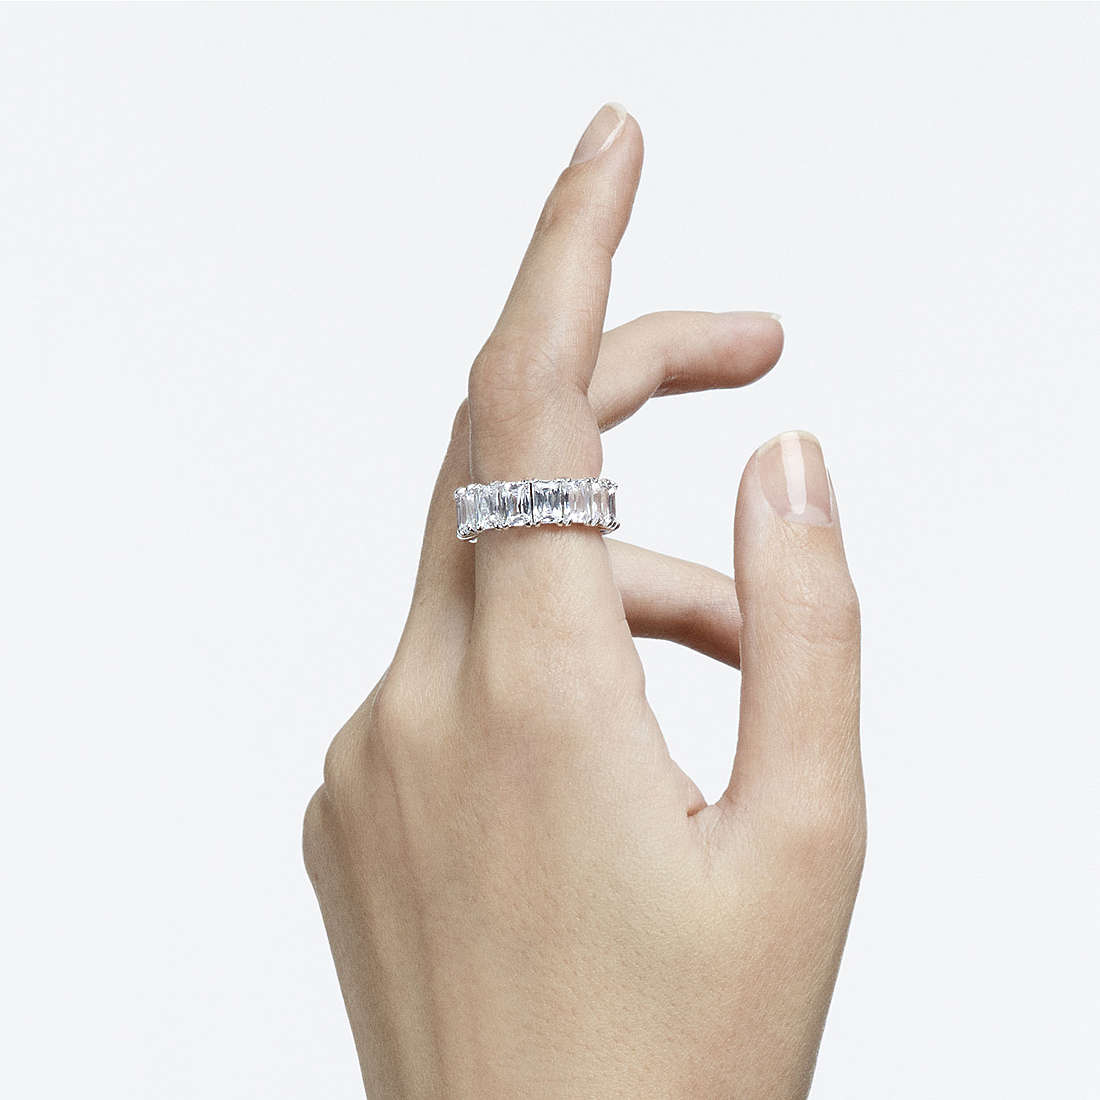 Swarovski rings Vittore woman 5562129 wearing